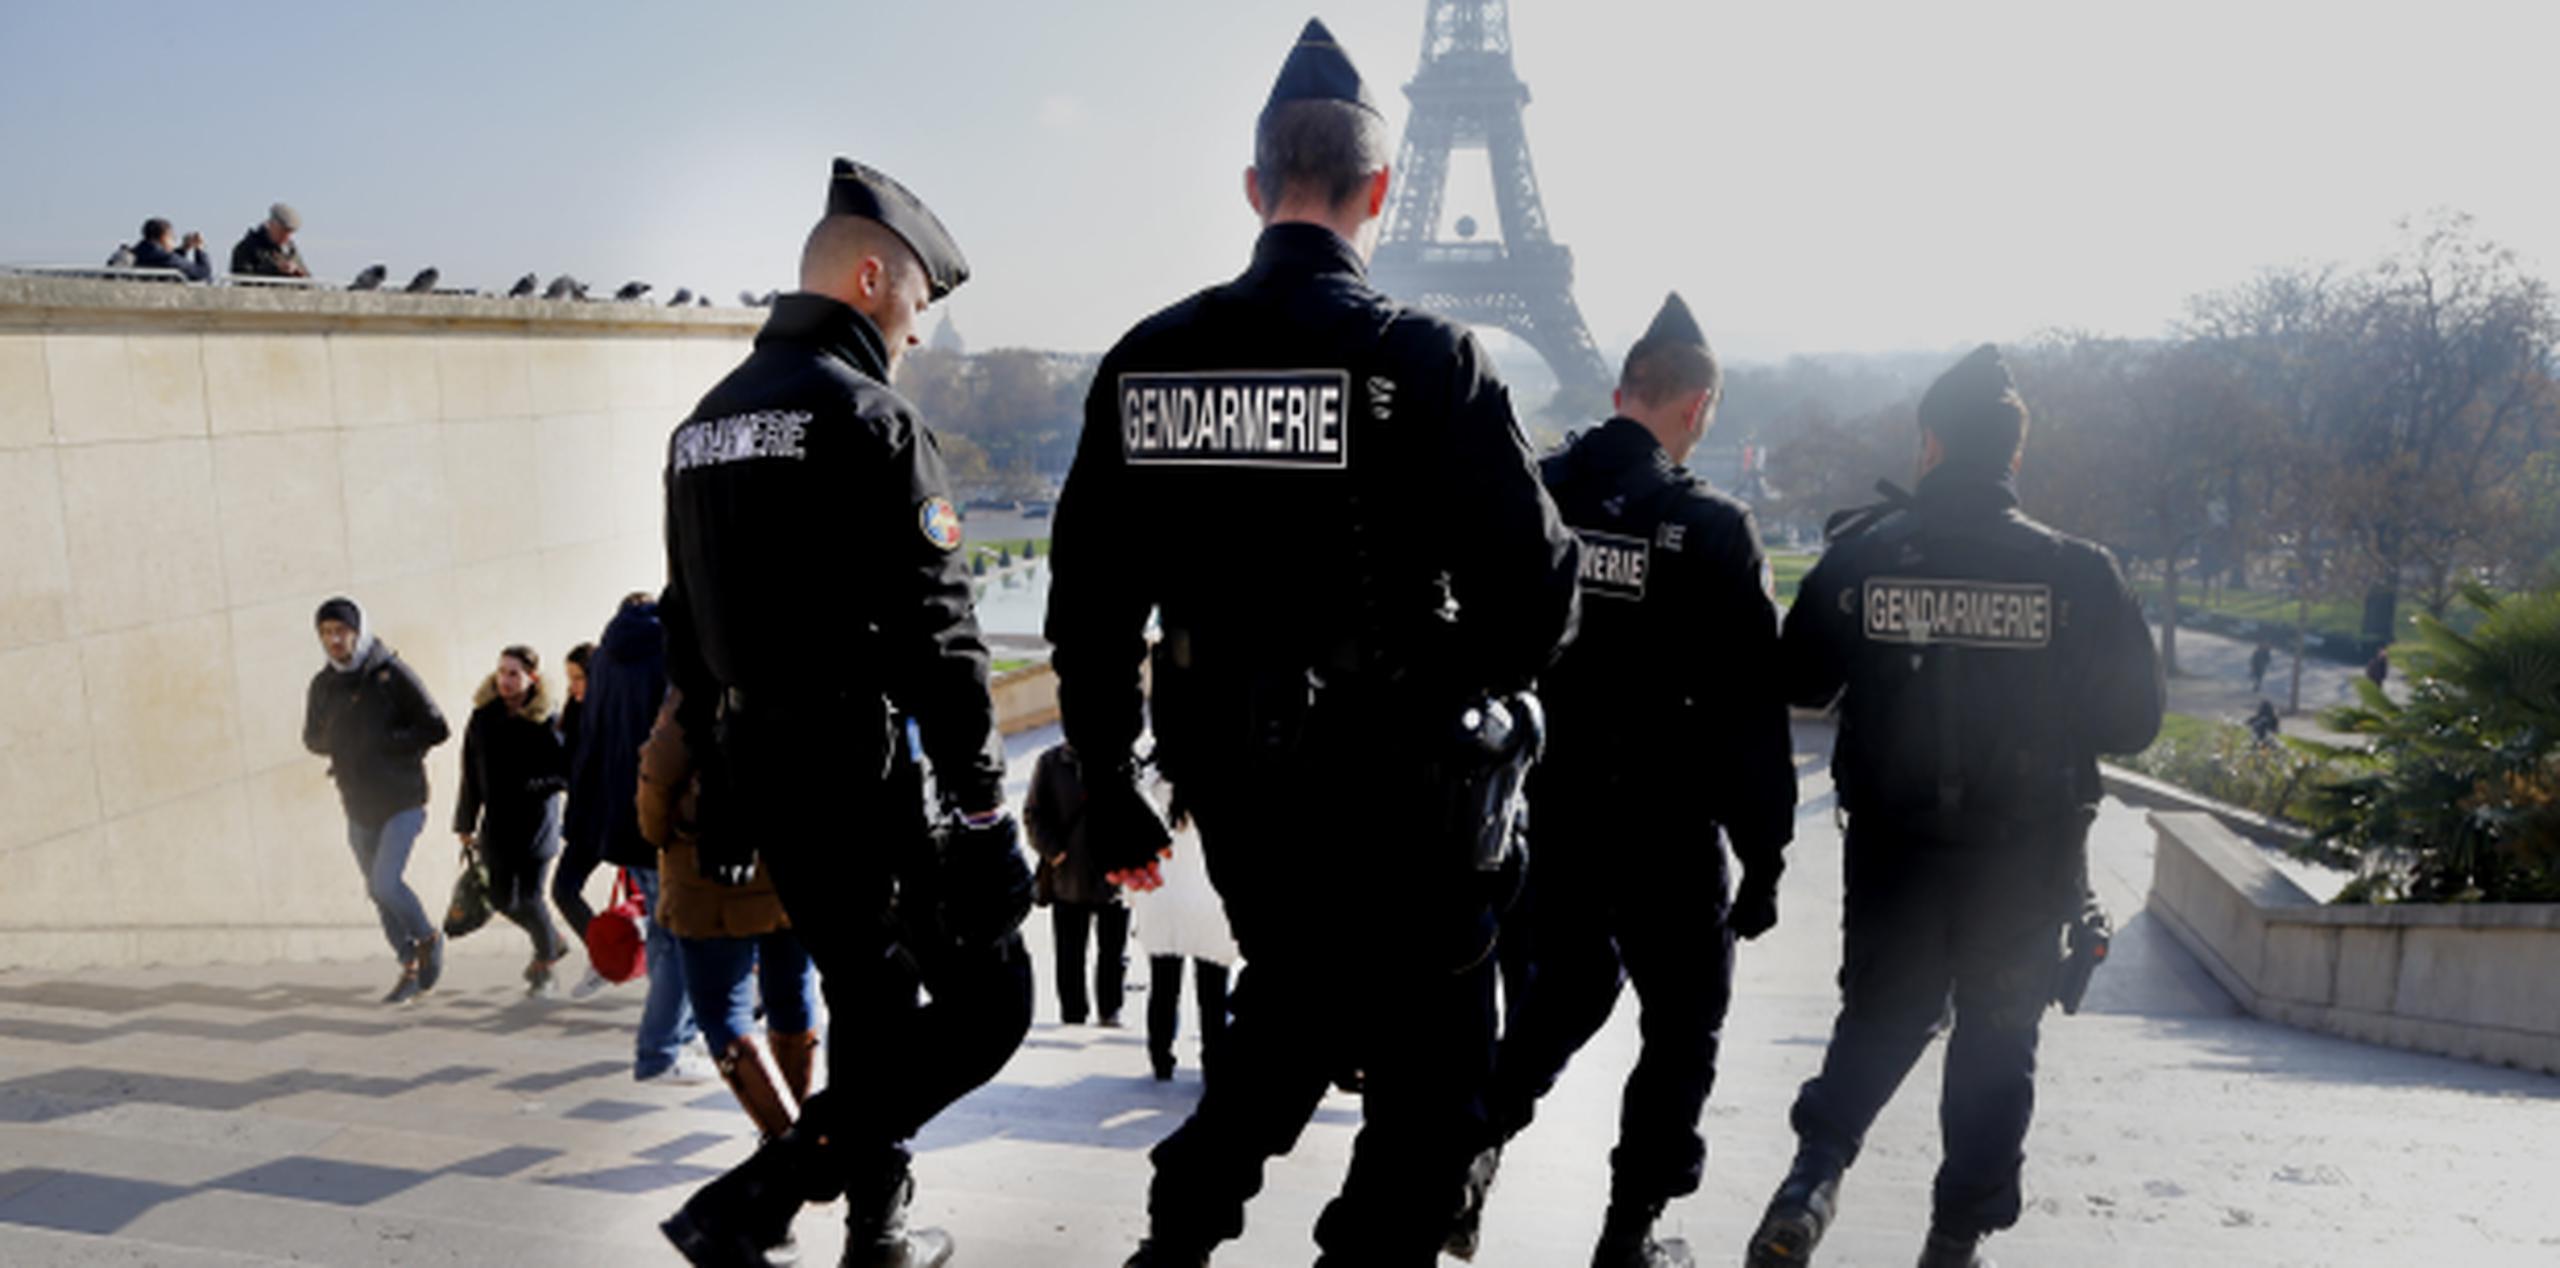 Oficiales de la gendarmería francesa patrullan cerca de la Torre Eiffel, en París. (AP)